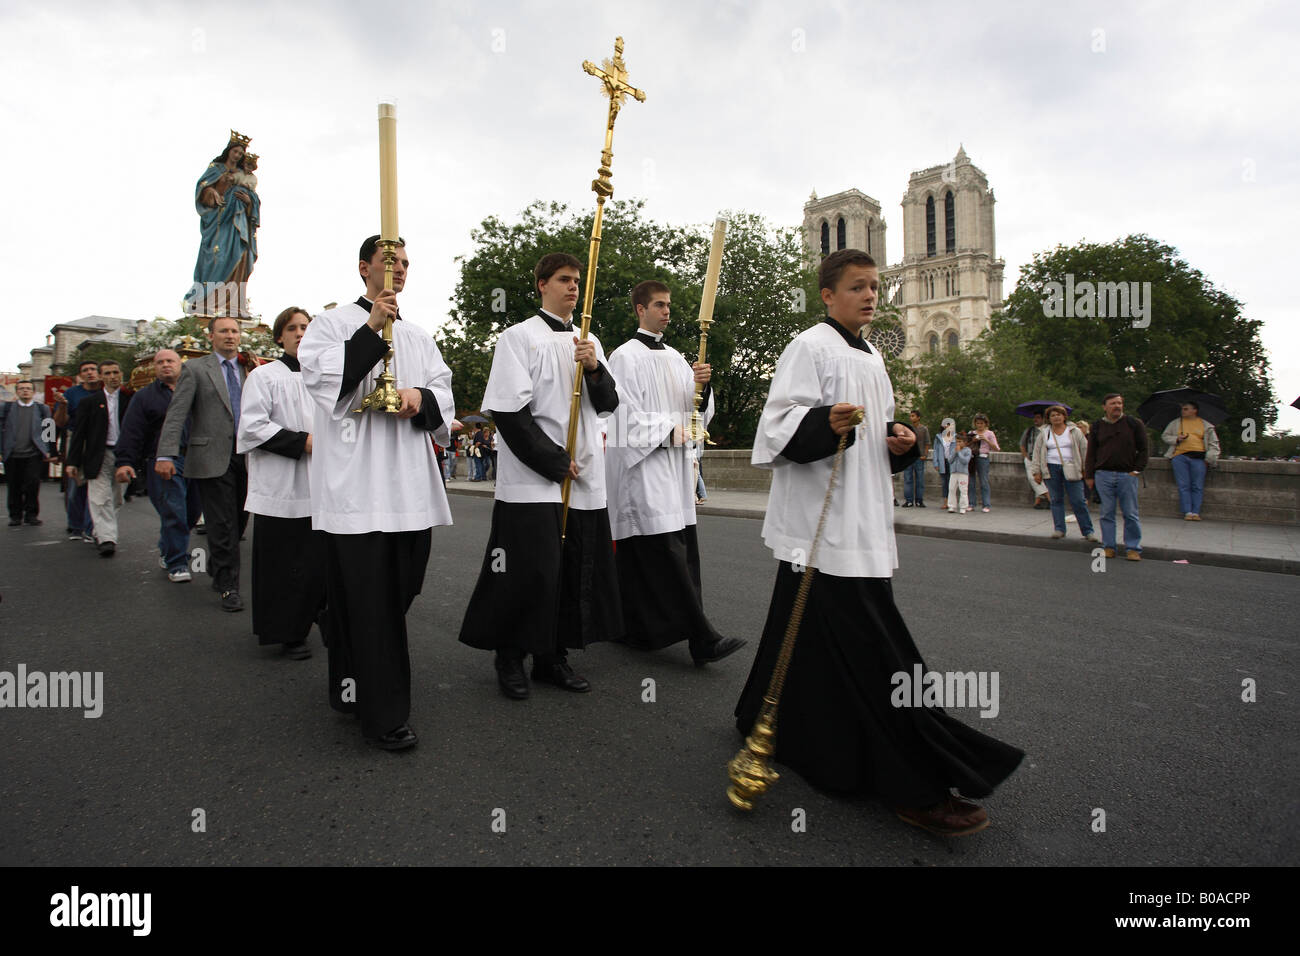 Catholics celebrating the Assumption of Mary, Paris, France Stock Photo